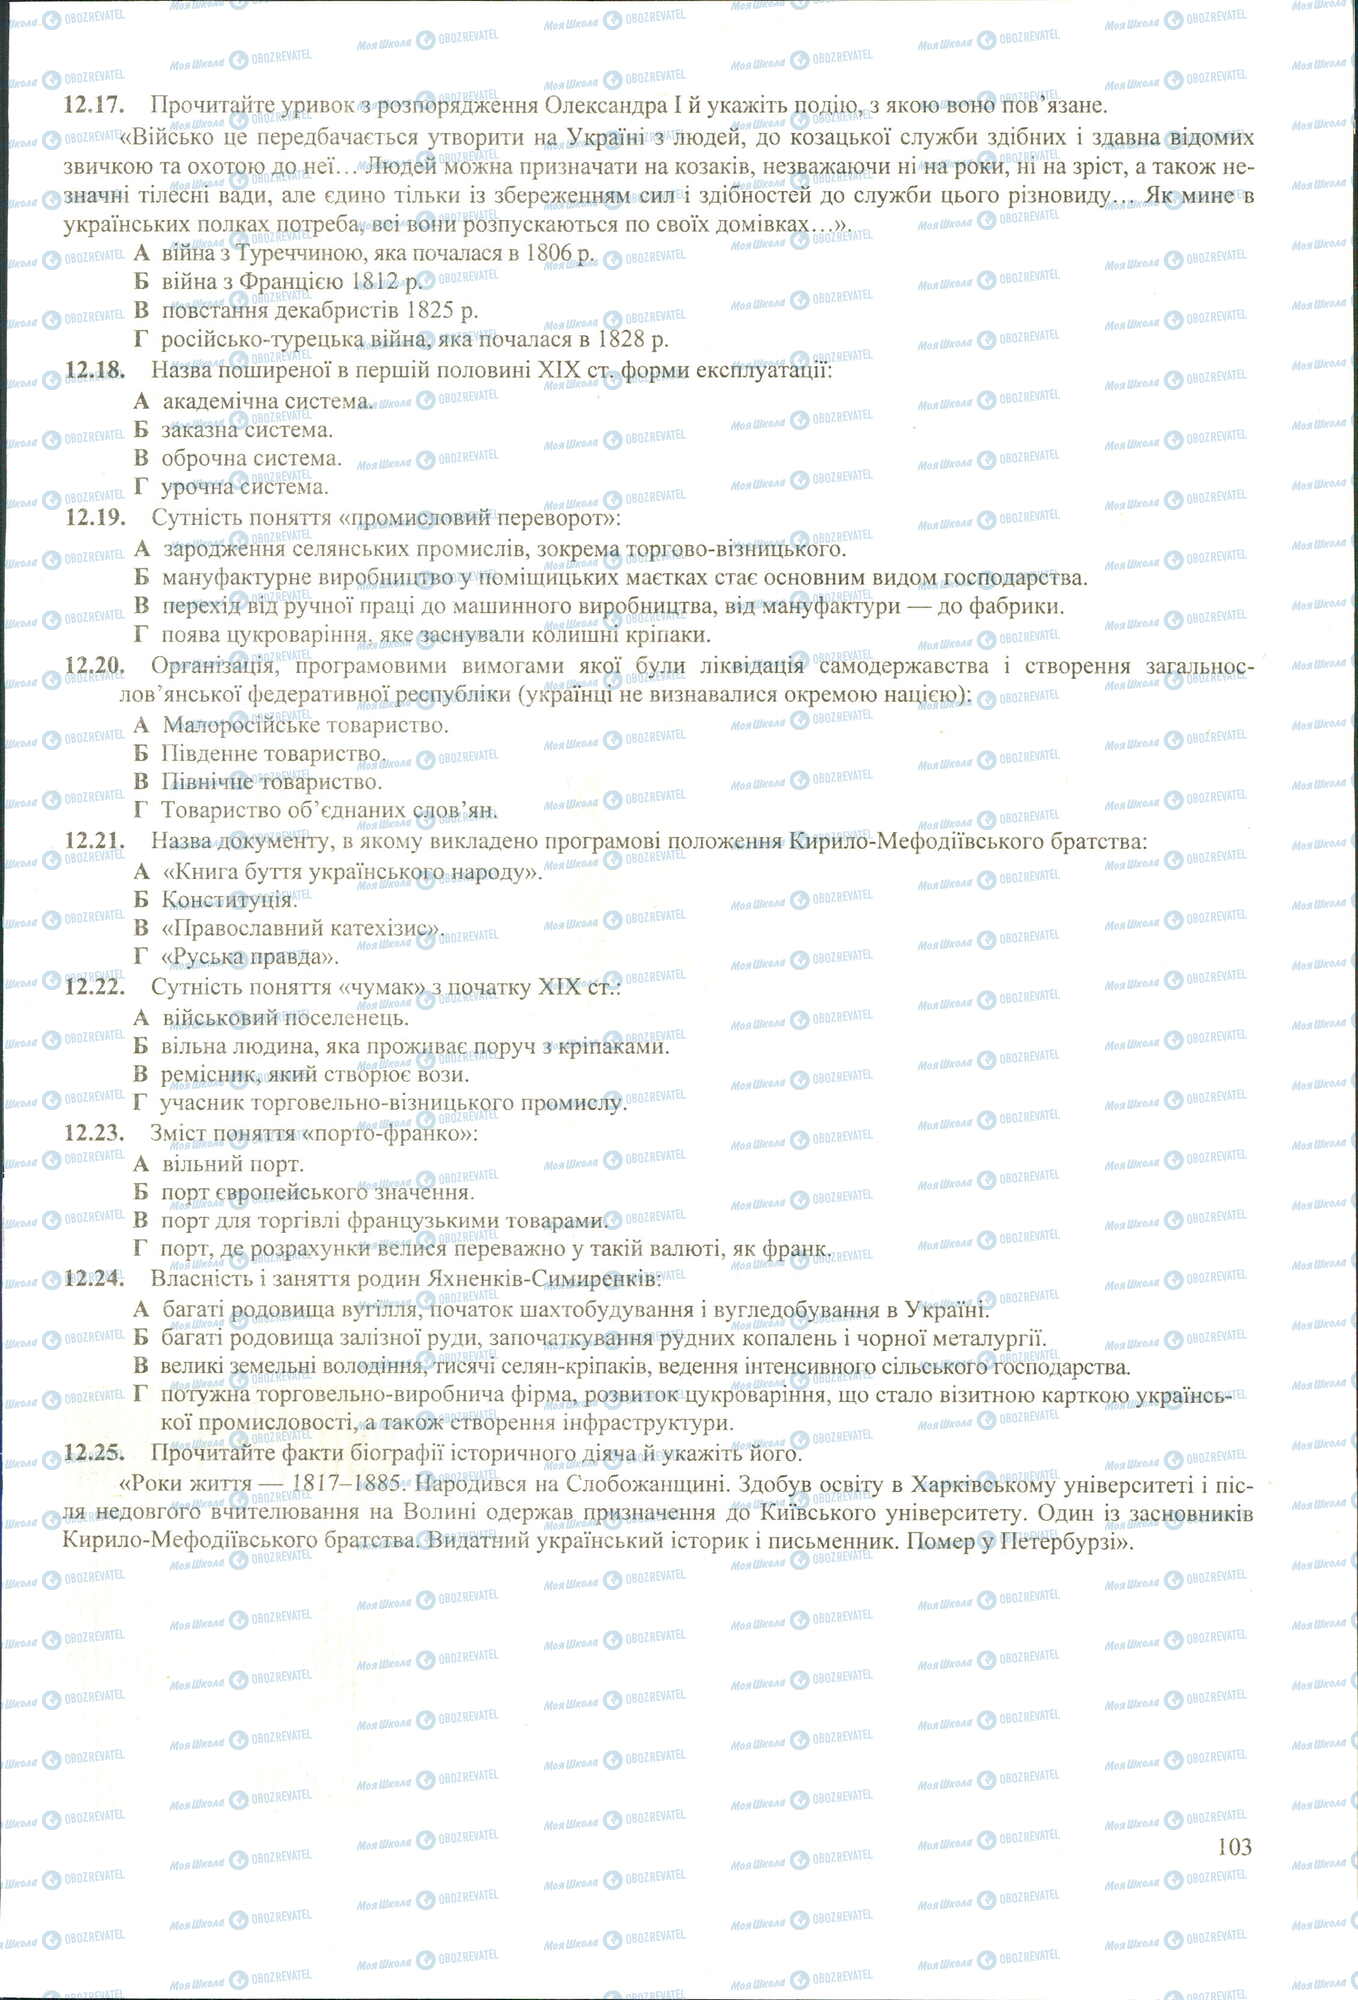 ЗНО История Украины 11 класс страница 17-25